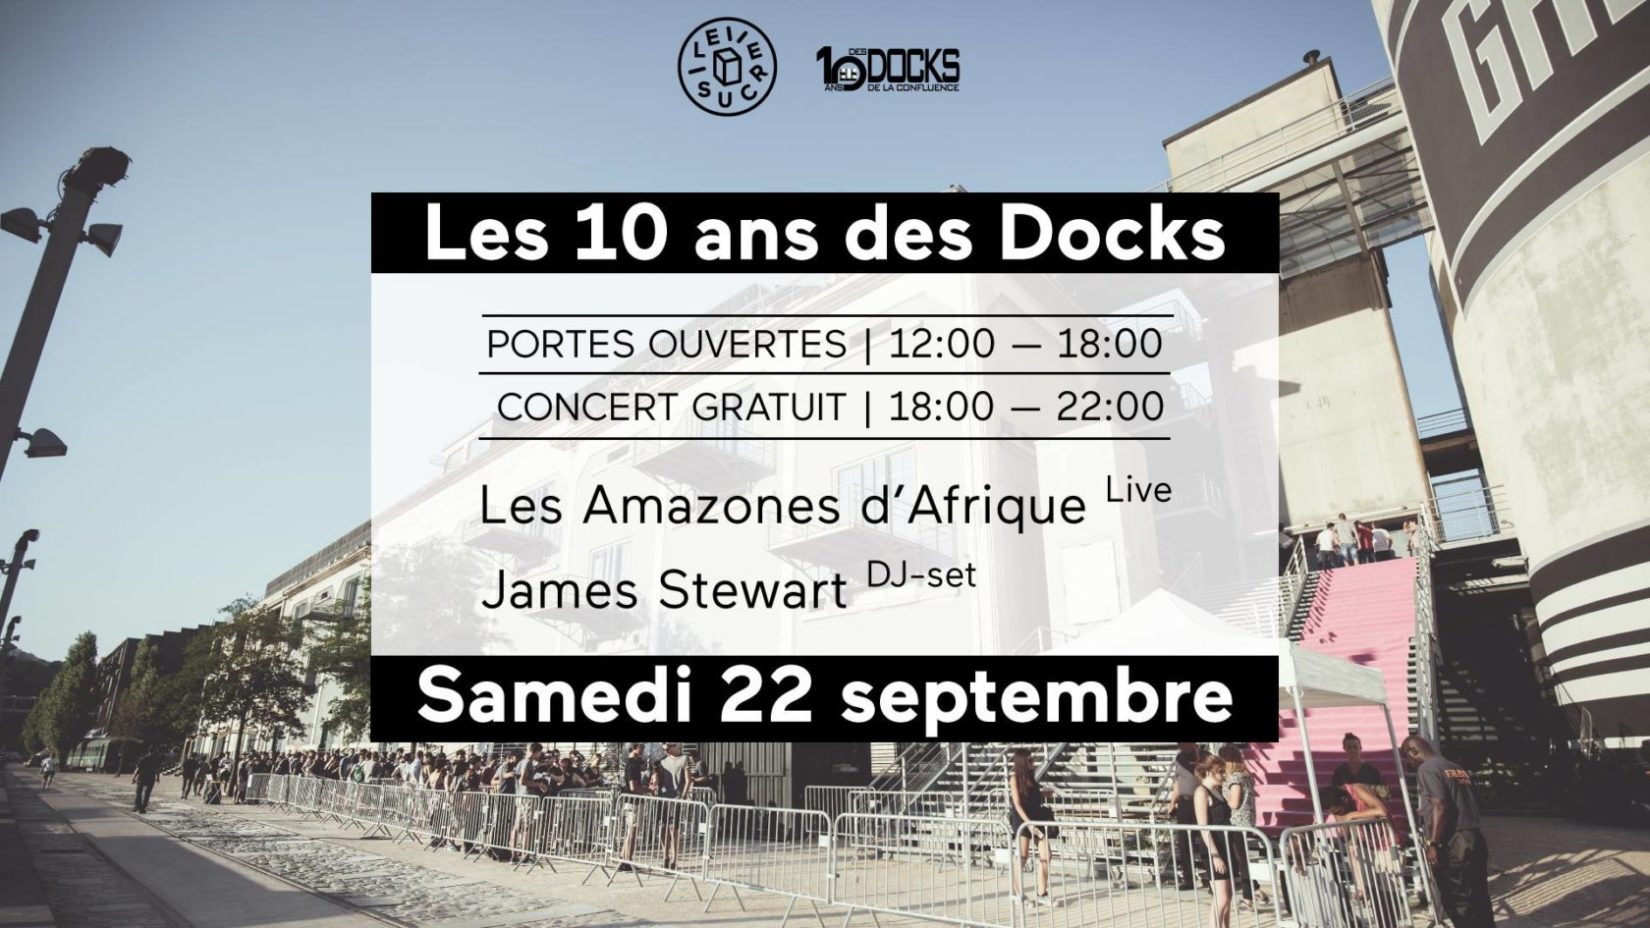 Portes ouvertes & Concert gratuit : Les 10 ans des Docks !